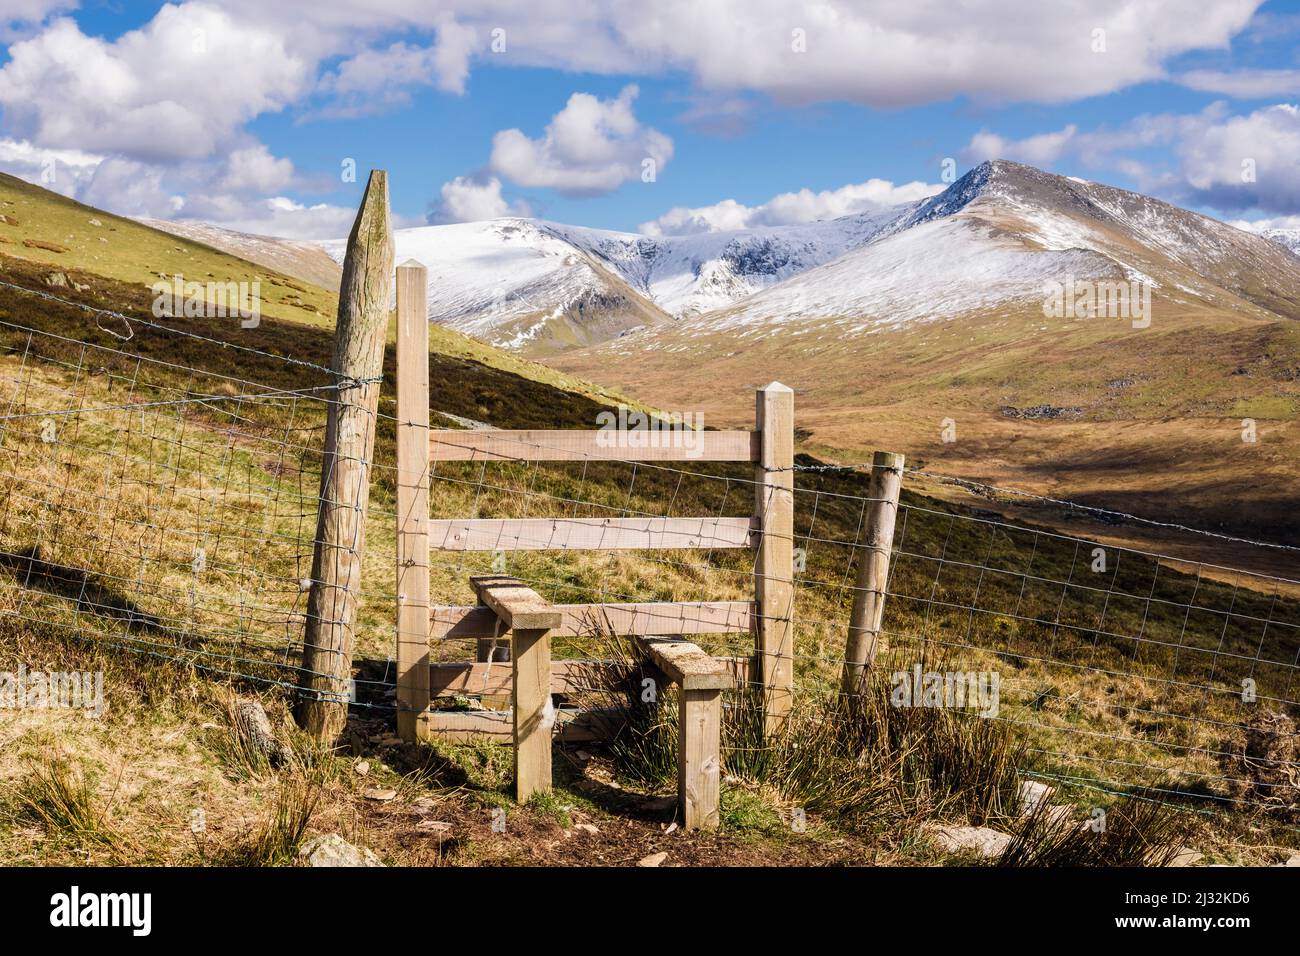 Le sentier se trouve sur le chemin de Gyrn Wigau avec les montagnes enneigées de Carneddau dans le parc national de Snowdonia. Bethesda, Gwynedd, nord du pays de Galles, Royaume-Uni, Grande-Bretagne Banque D'Images